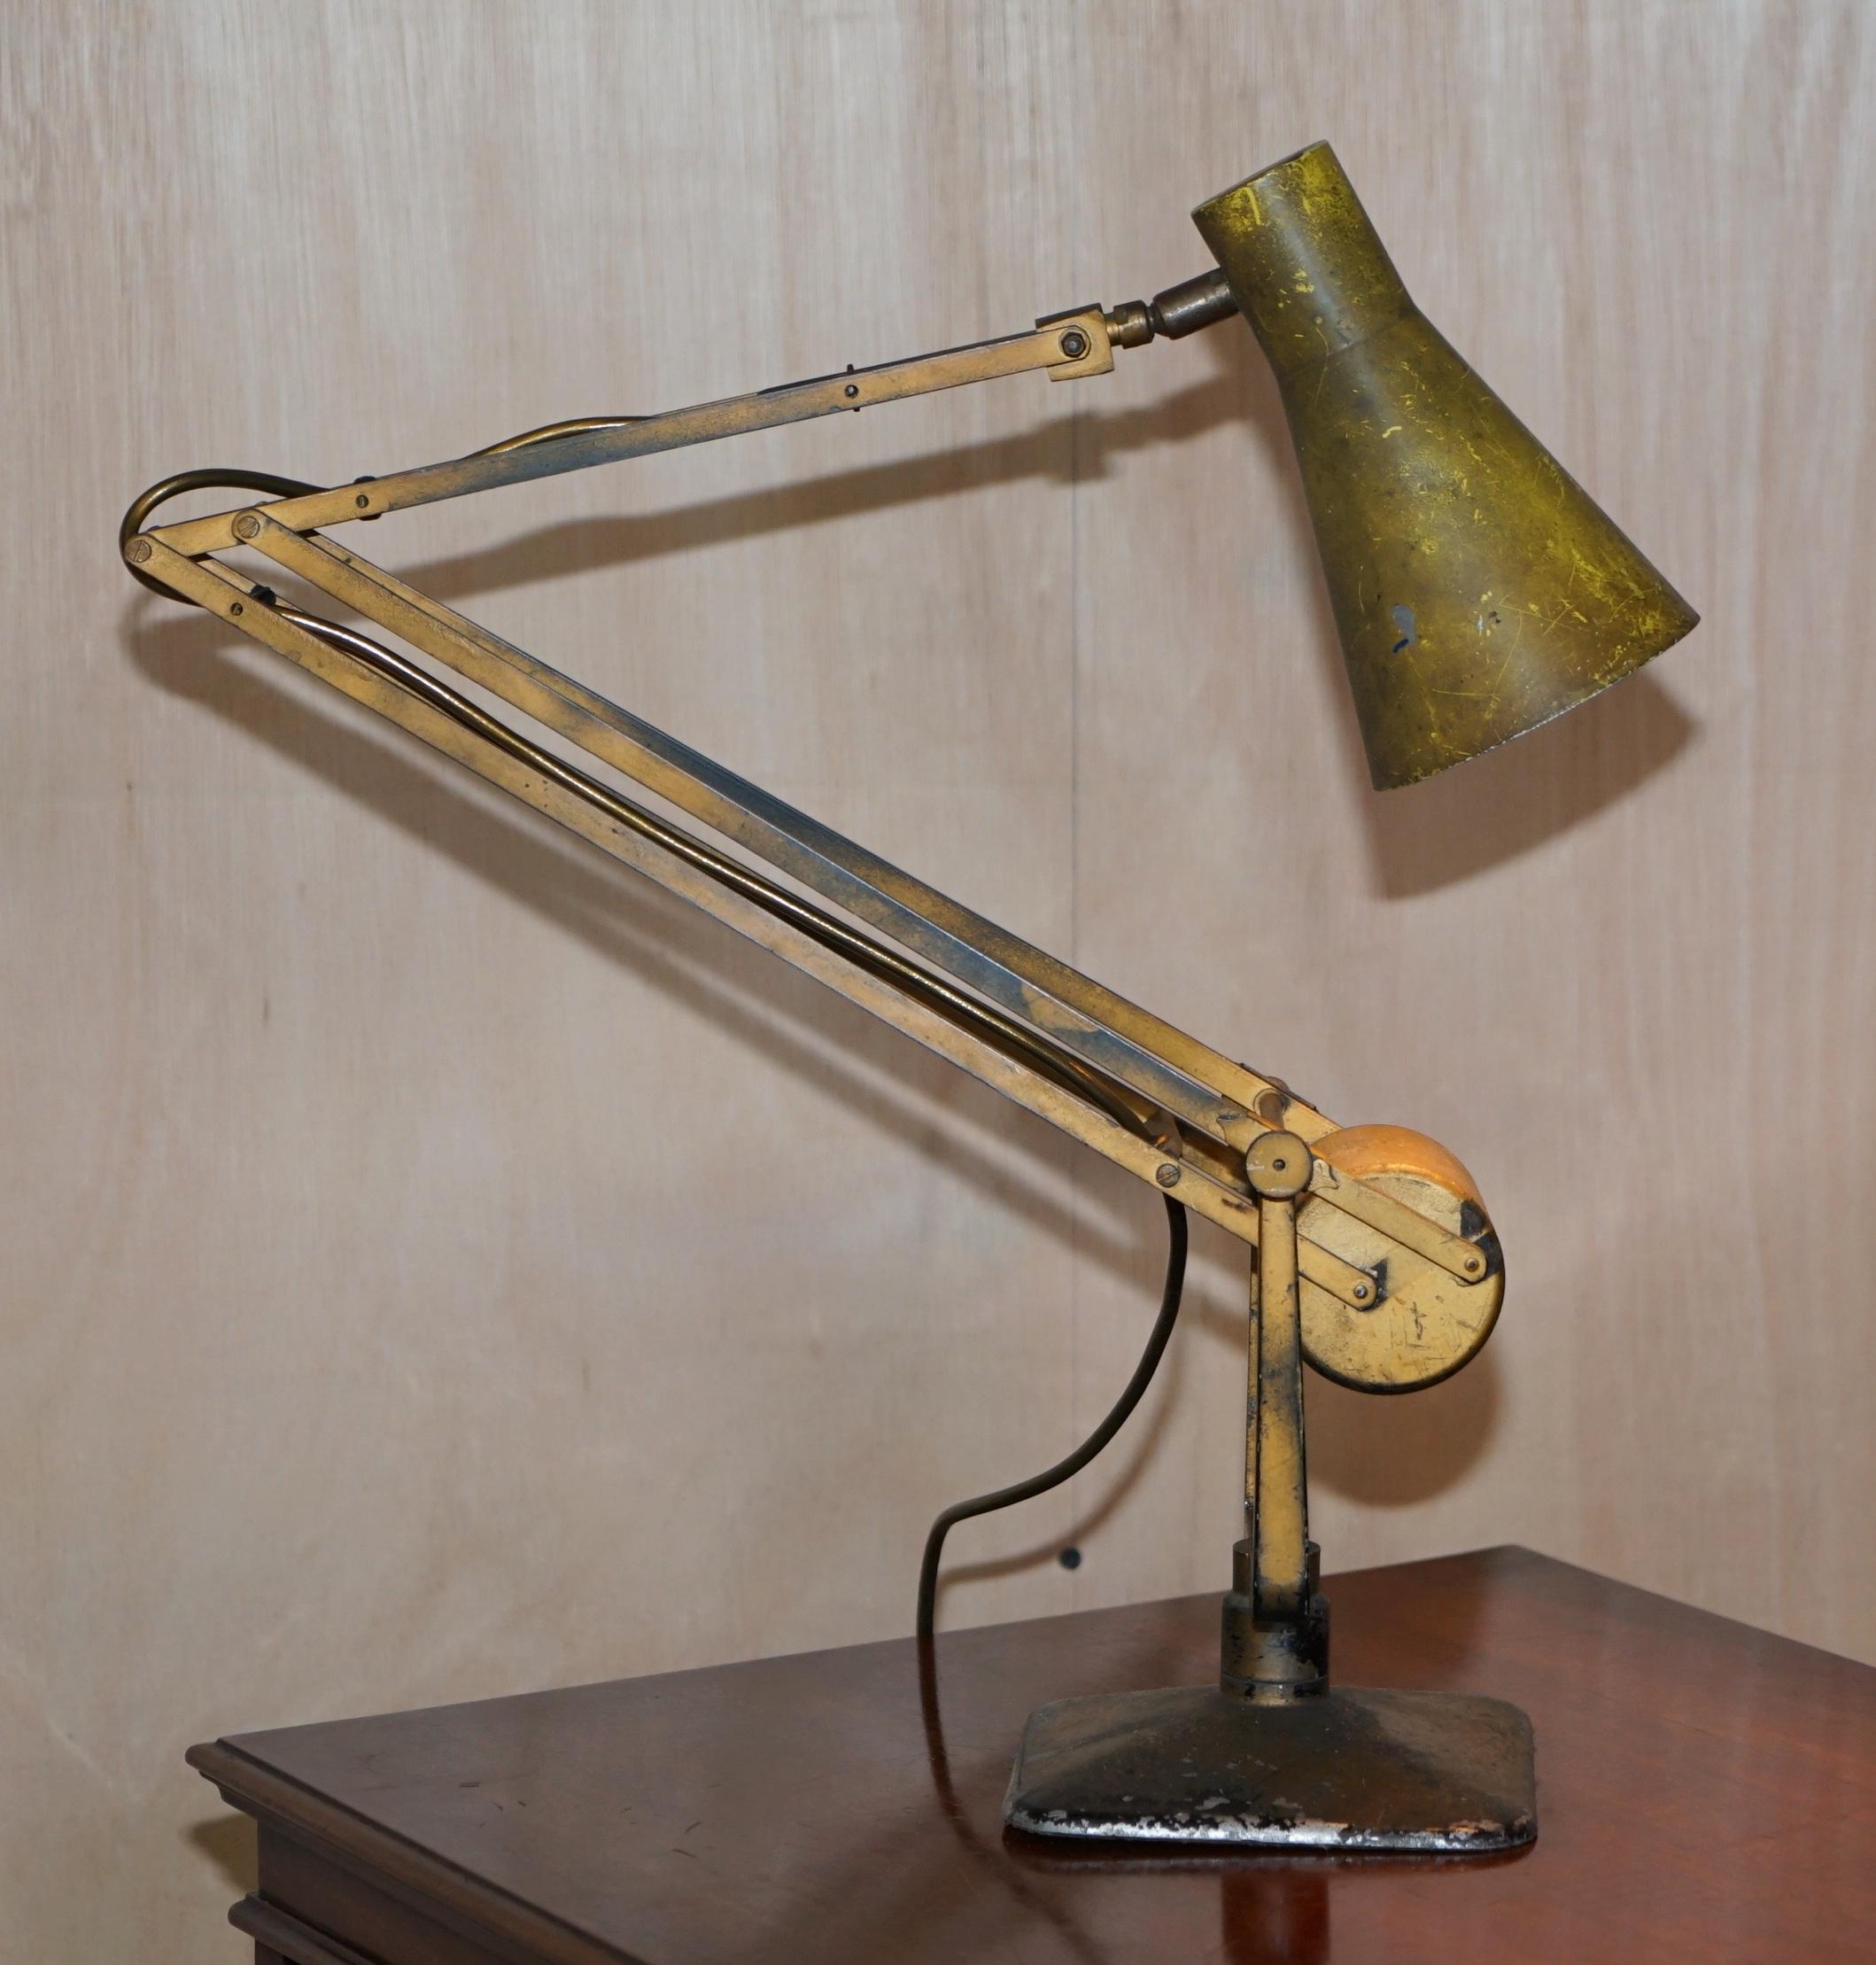 Nous sommes ravis d'offrir à la vente cette lampe à tambour contrepoids Hadrill & Horstmann originale des années 1940.

Une lampe de très bonne qualité, avec la peinture d'origine de l'usine et une pièce d'origine, utilisée en usine, elle a toute